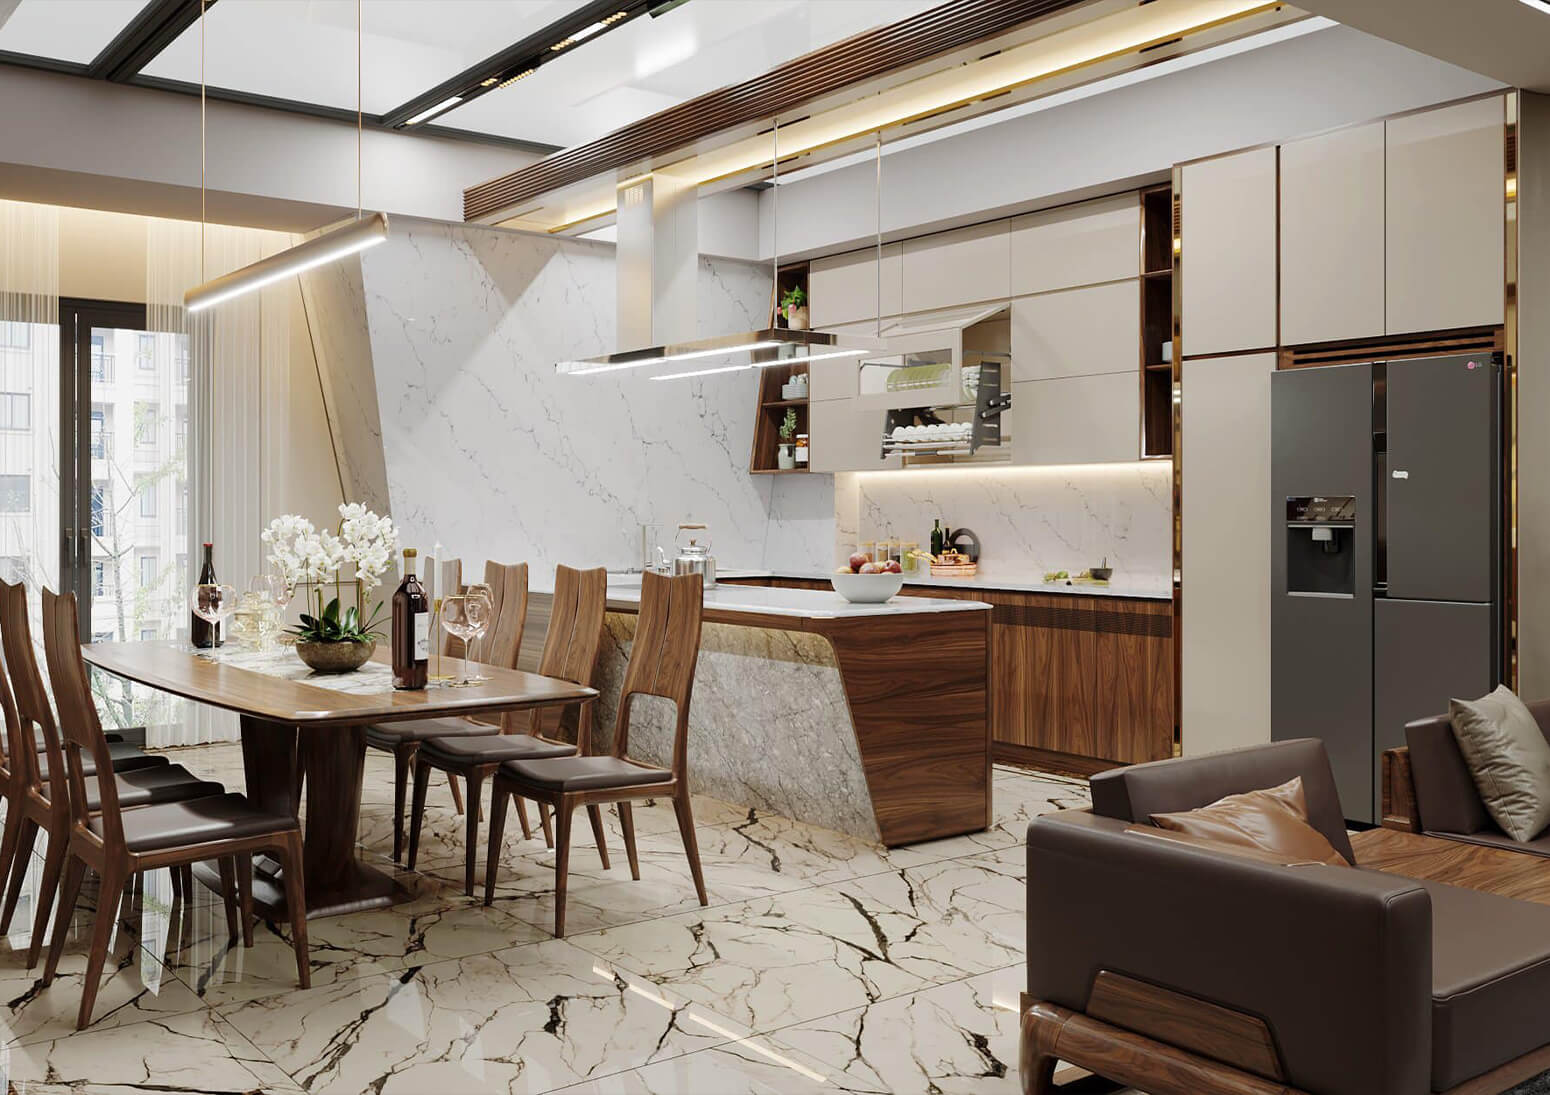 Không gian nội thất bếp được thiết kế với nội thất gỗ óc chó sang trọng, tiện nghi